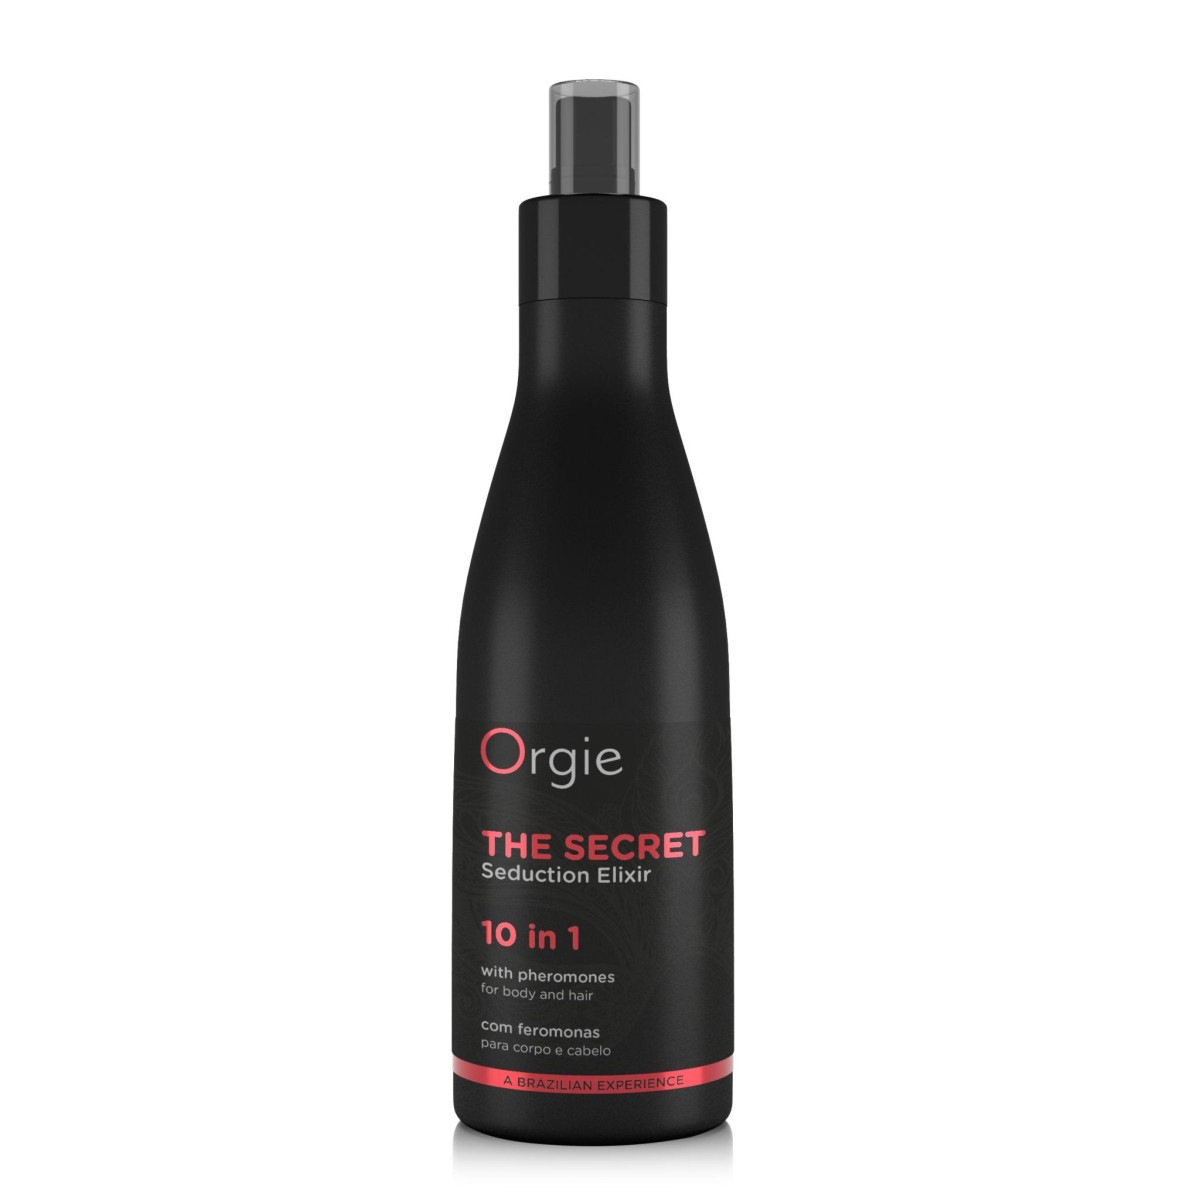 Orgie The Secret Seduction Elixir 10 In 1 200 ml, květinovo-ovocný elixír ve spreji pro tělo i vlasy